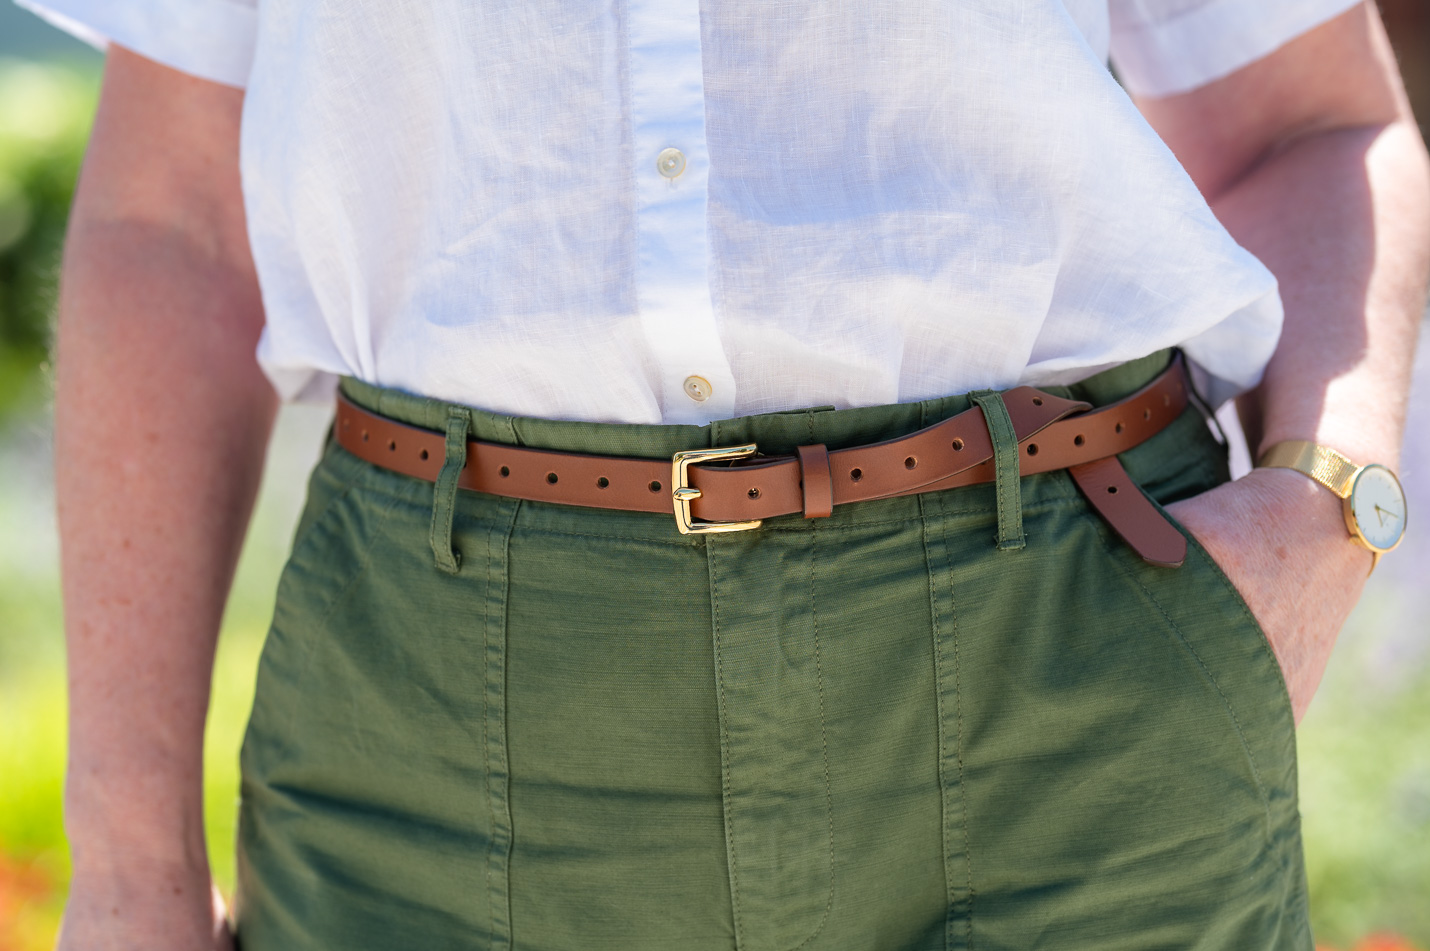 skinny belt